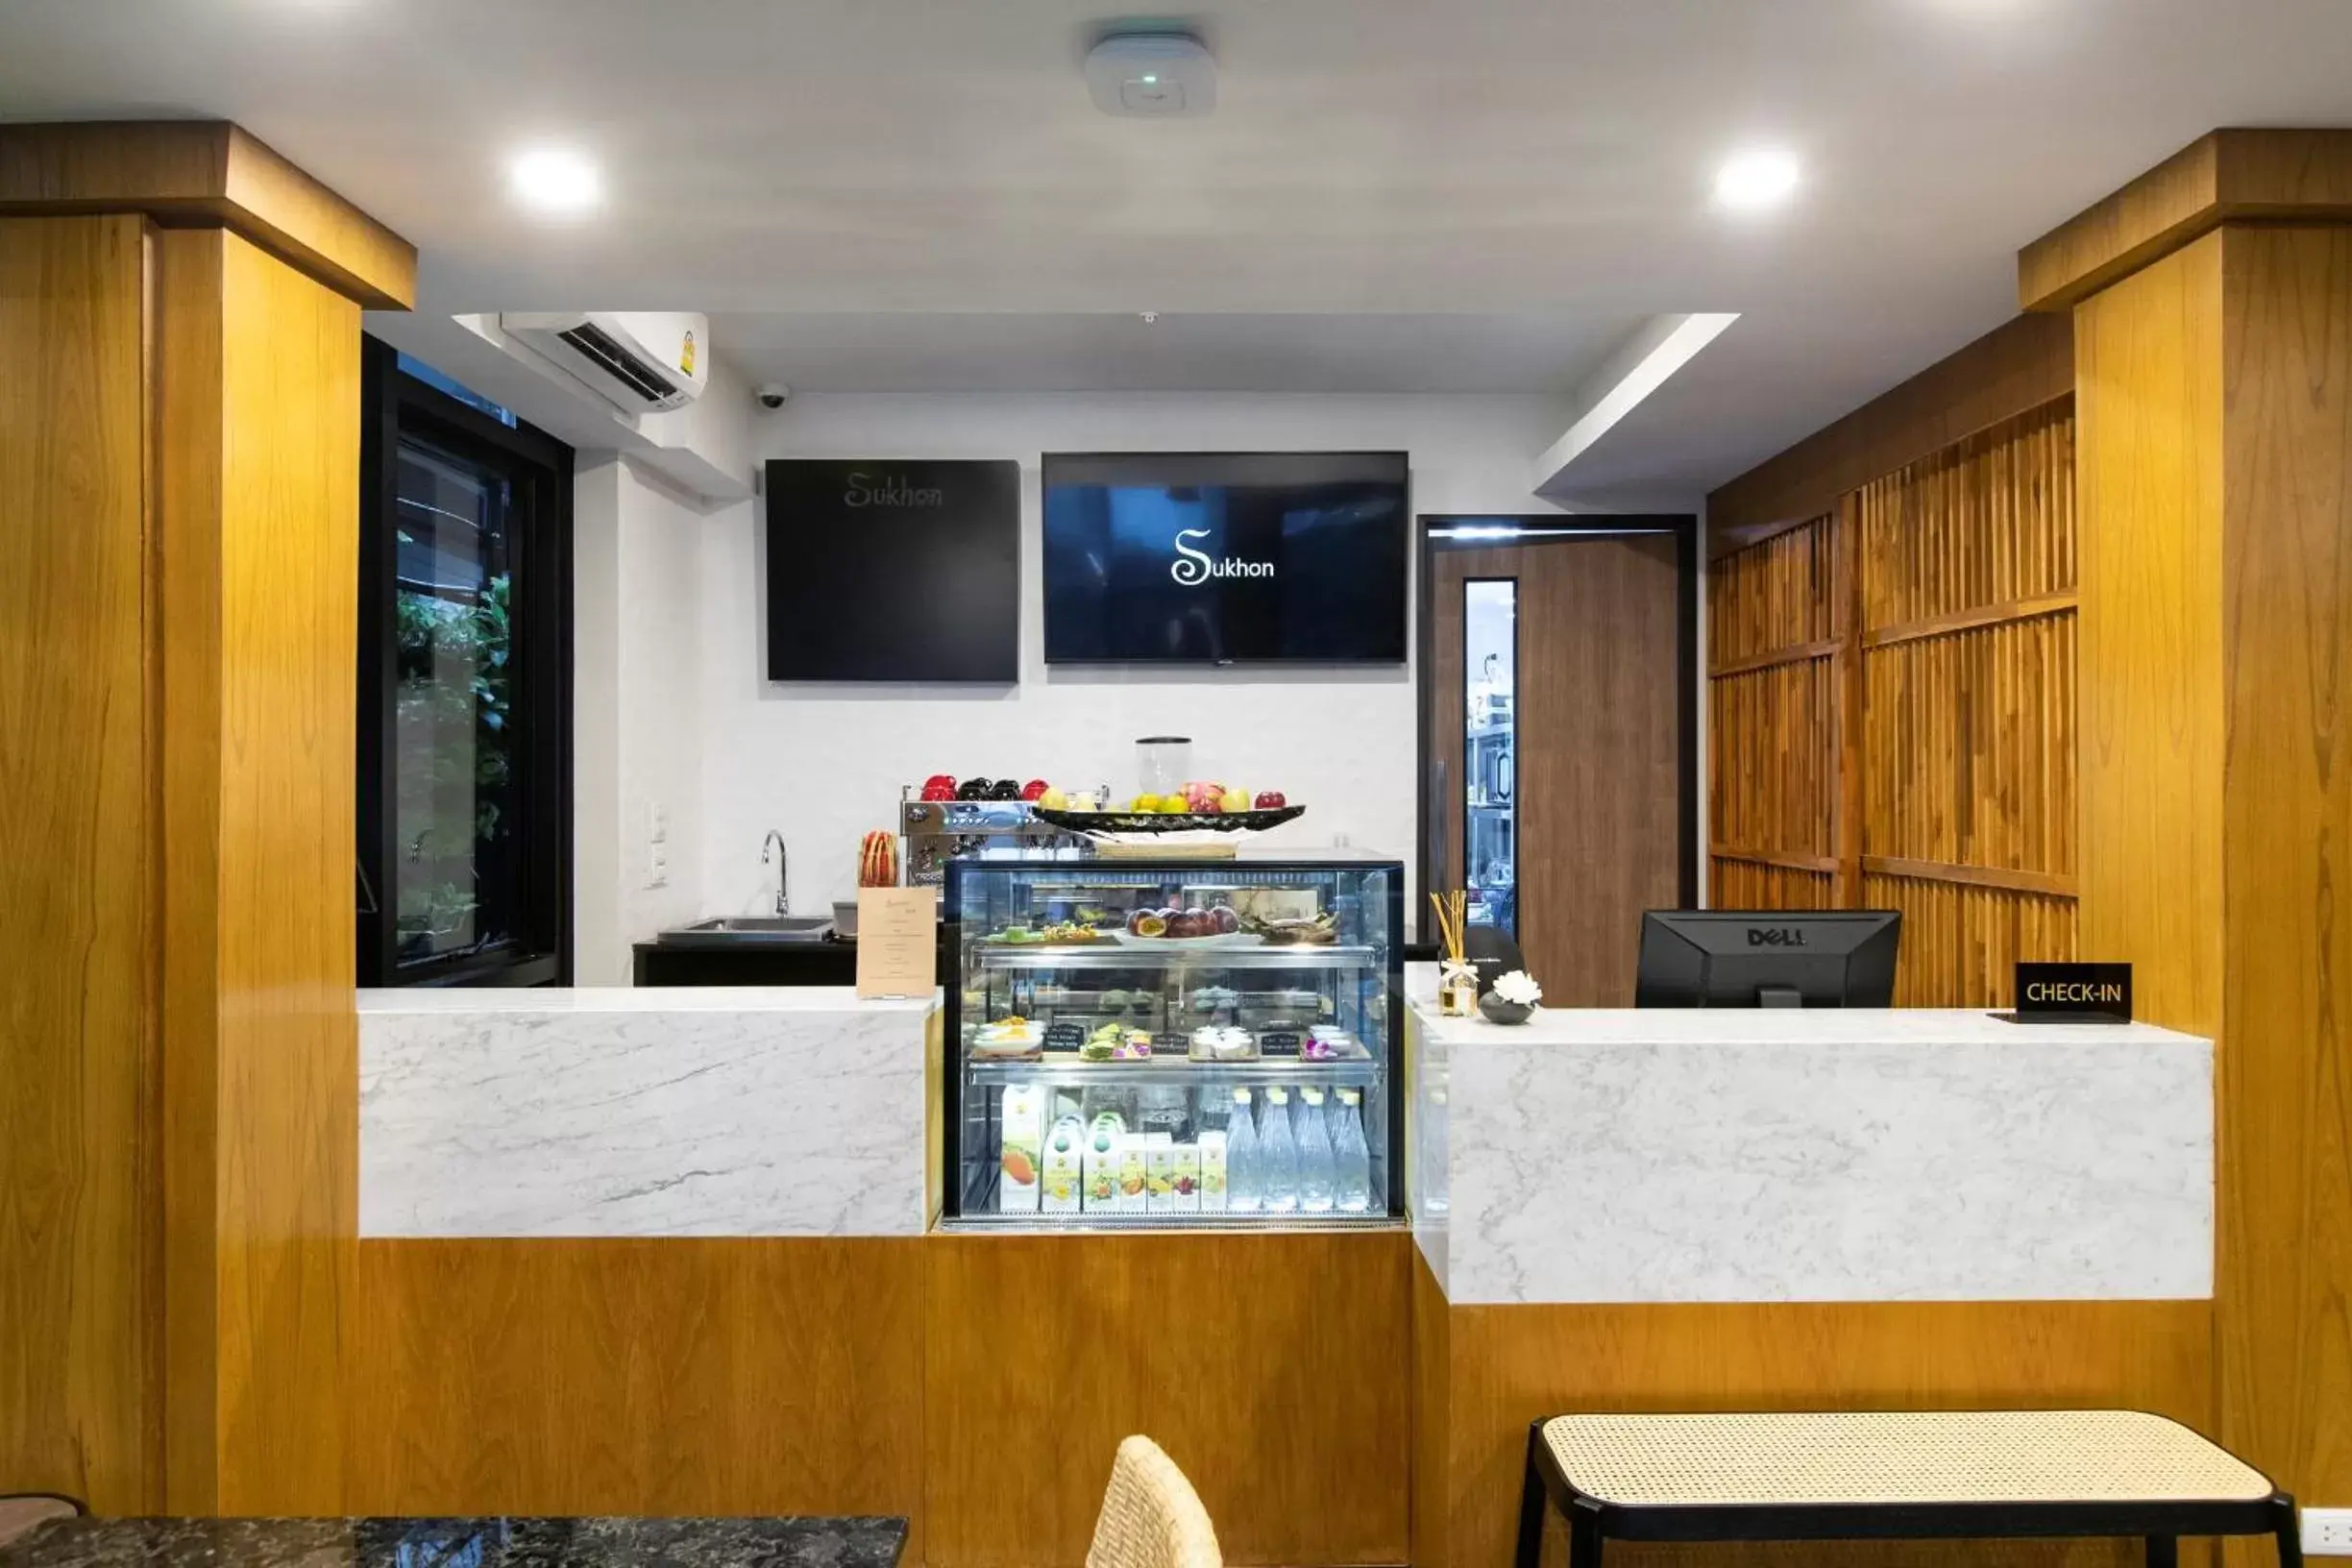 Lobby or reception in Sukhon Hotel - SHA Plus